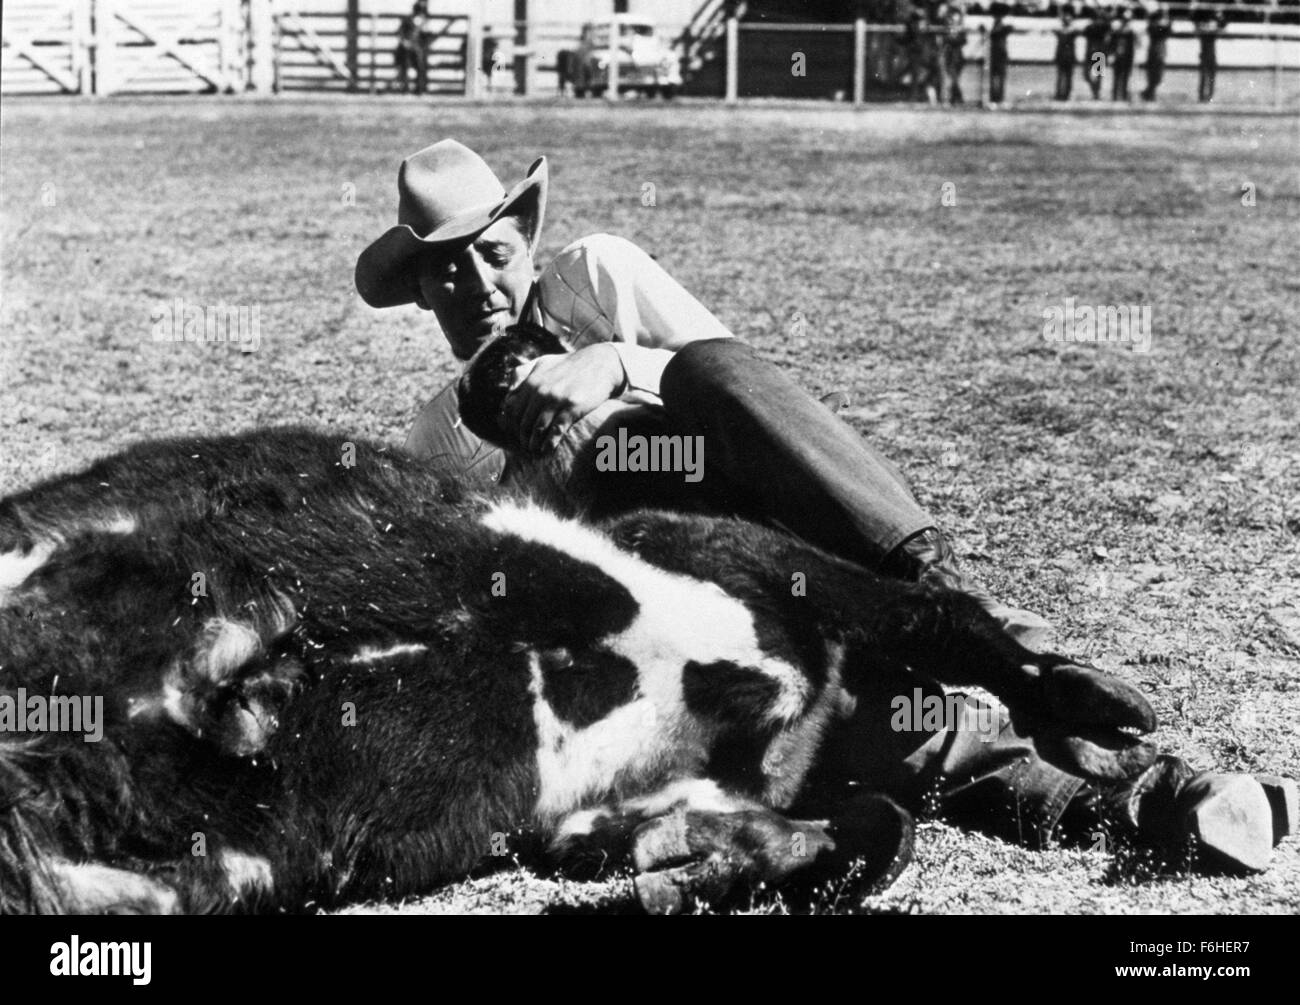 1952-filmtitel-lusterne-manner-regie-nicholas-ray-studio-rko-im-bild-robert-mitchum-cowboy-rodeo-cowboyhut-tackle-kuh-lasso-gefangen-gefangen-gefesselt-wrestling-kampf-harte-jungs-bauernhof-bild-kredit-snap-f6her7.jpg